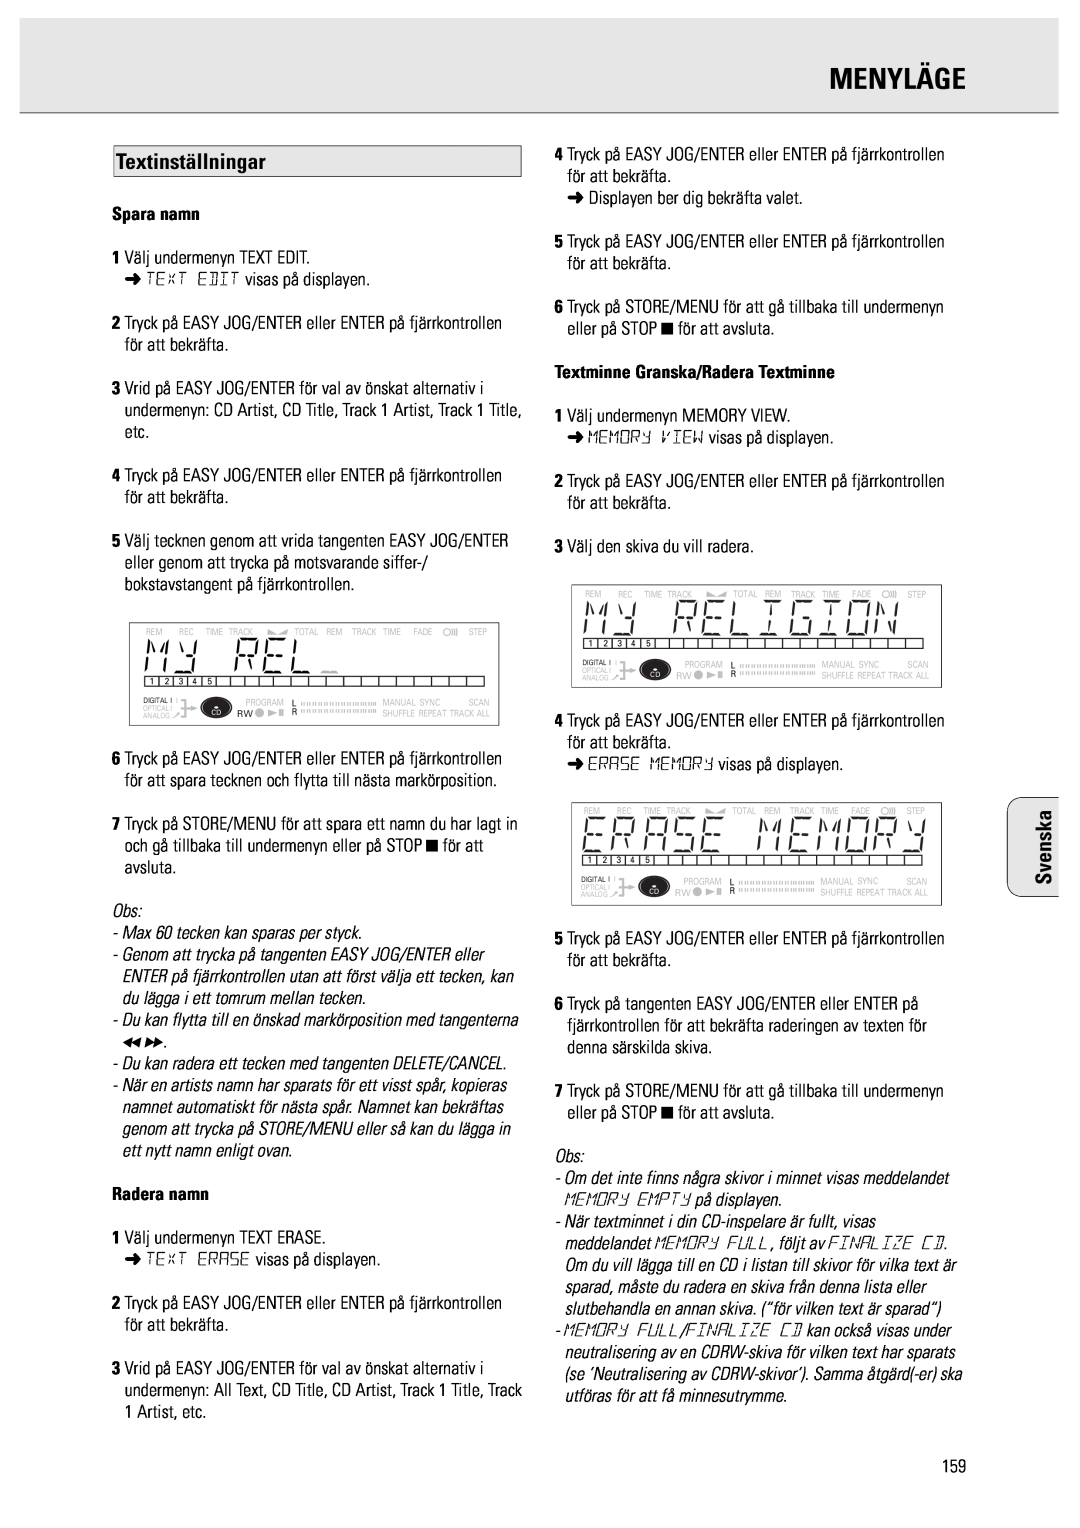 Philips CDR950/951 manual Menyläge, Textinställningar, Spara namn, Radera namn, Textminne Granska/Radera Textminne, Svenska 